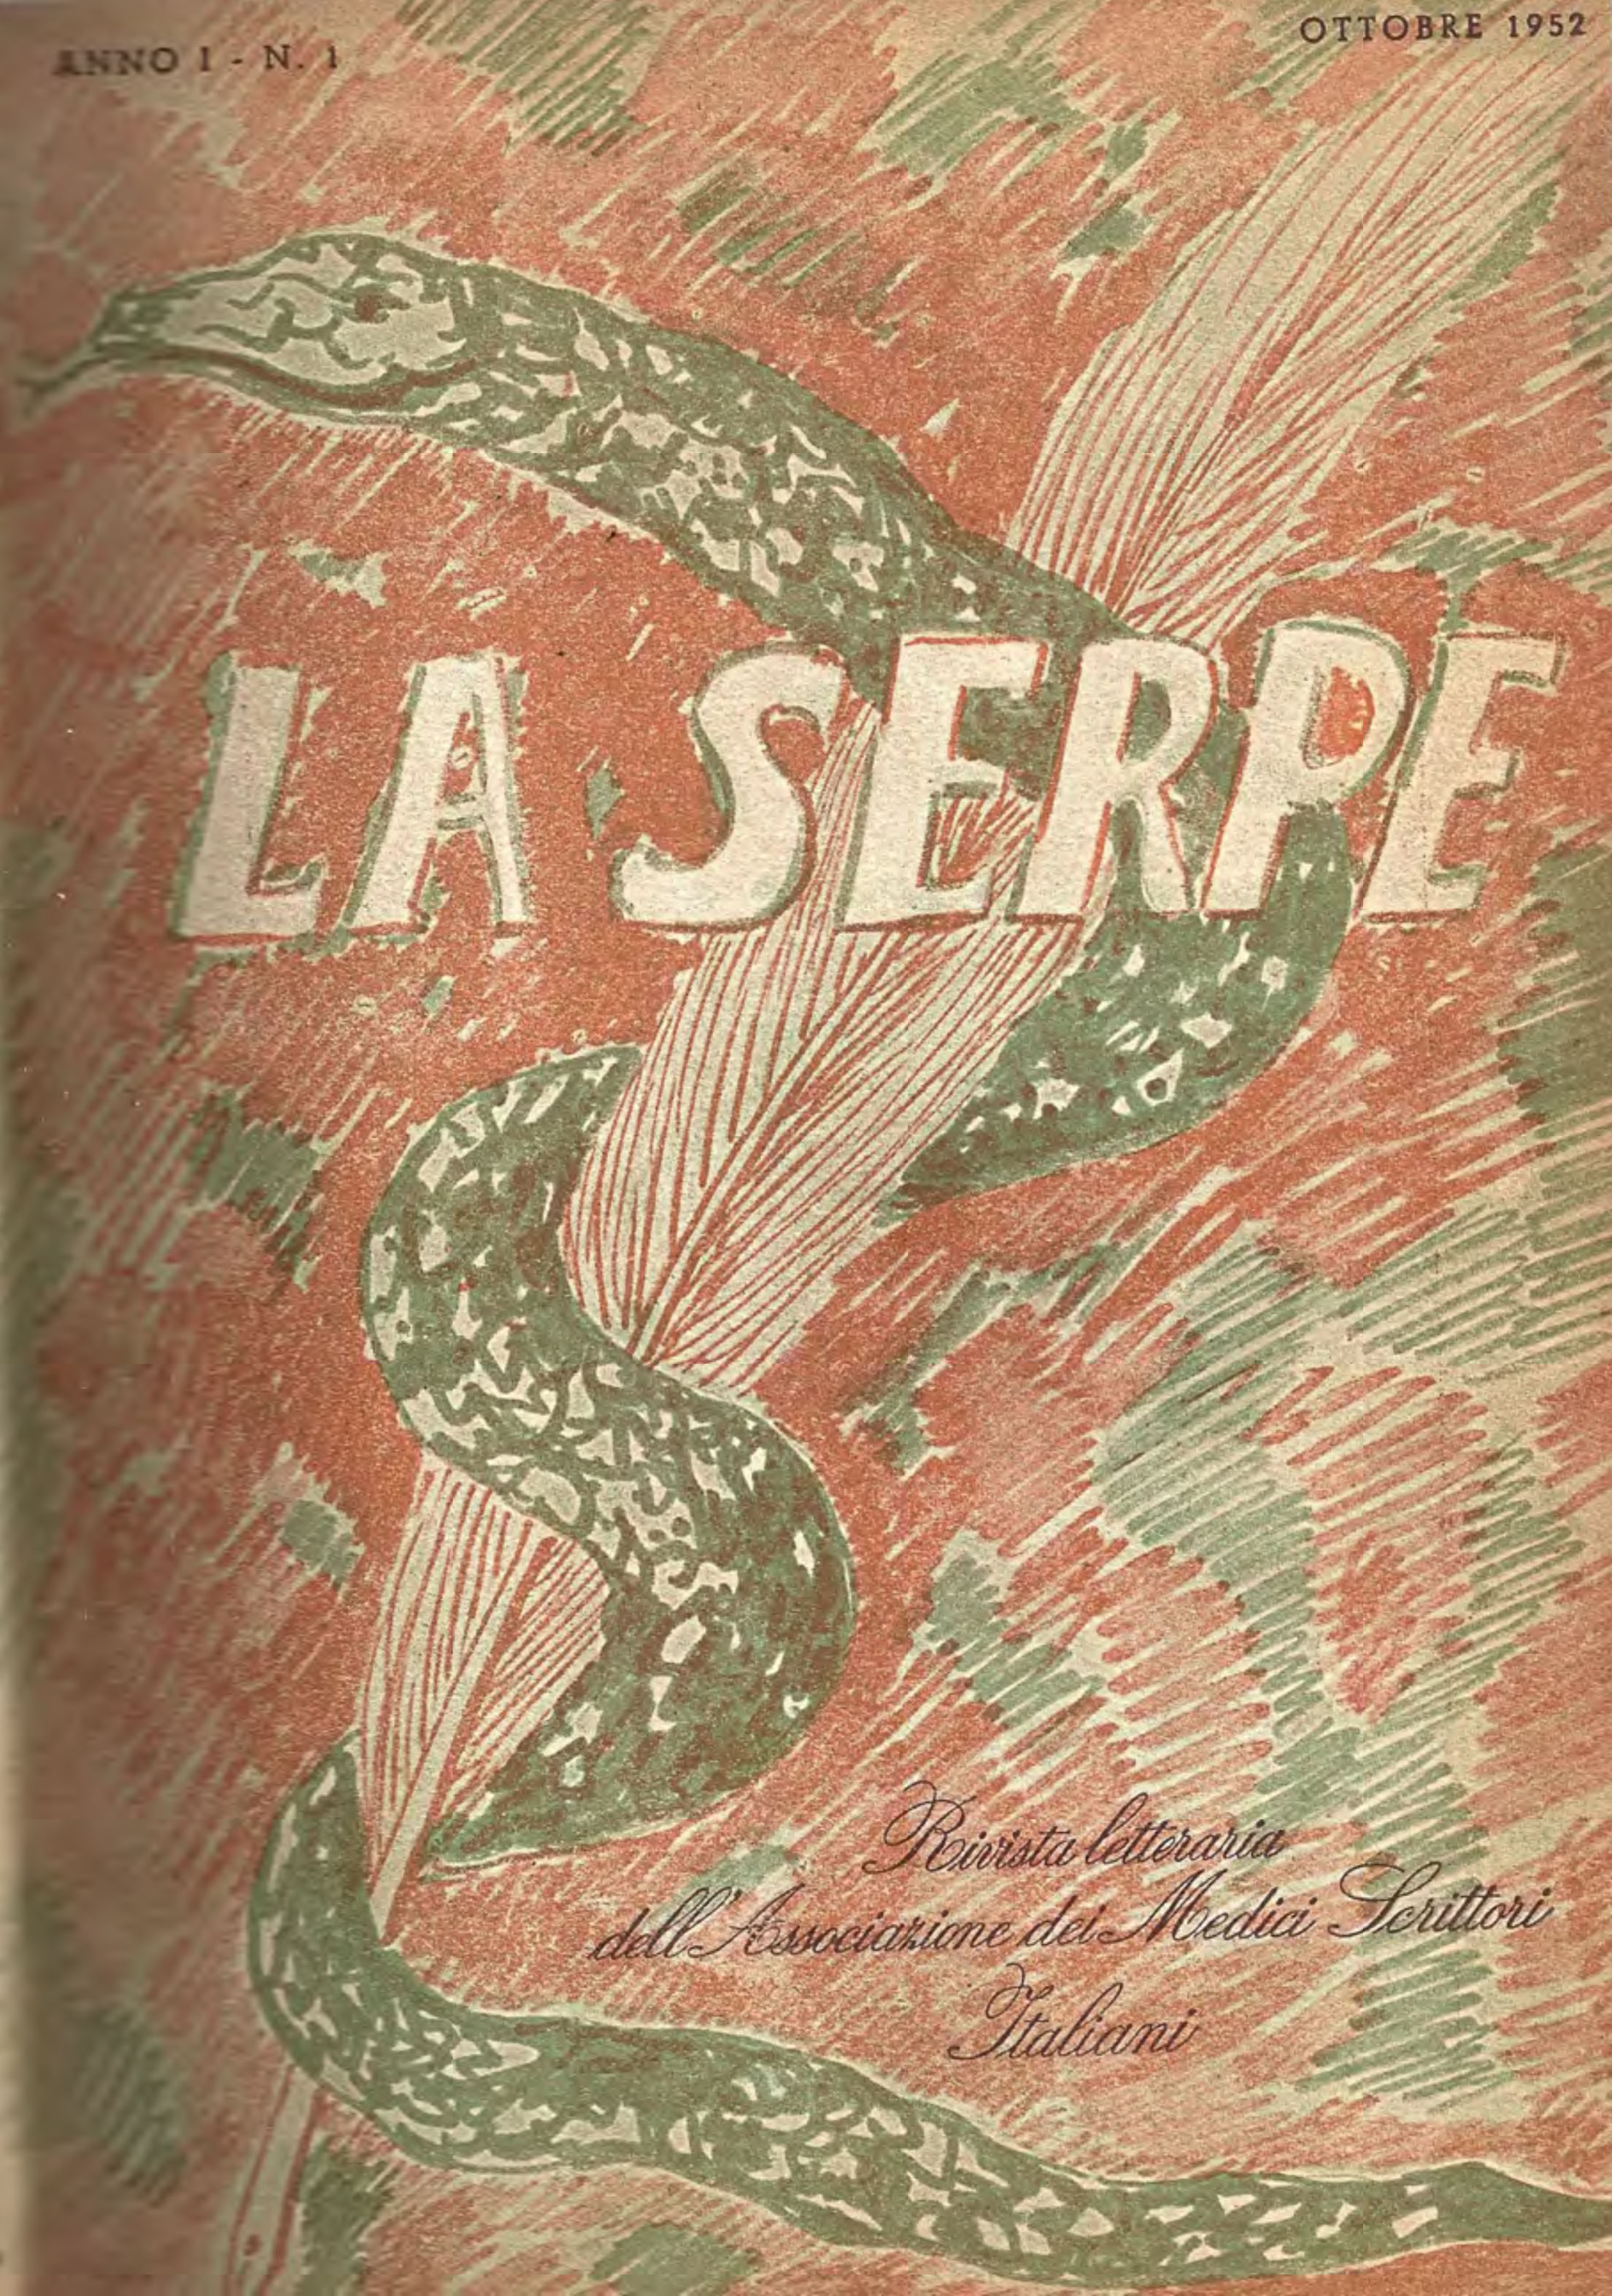 Copertina de La serpe, rivista fondata dall’Associazione medici scrittori italiani nel 1952